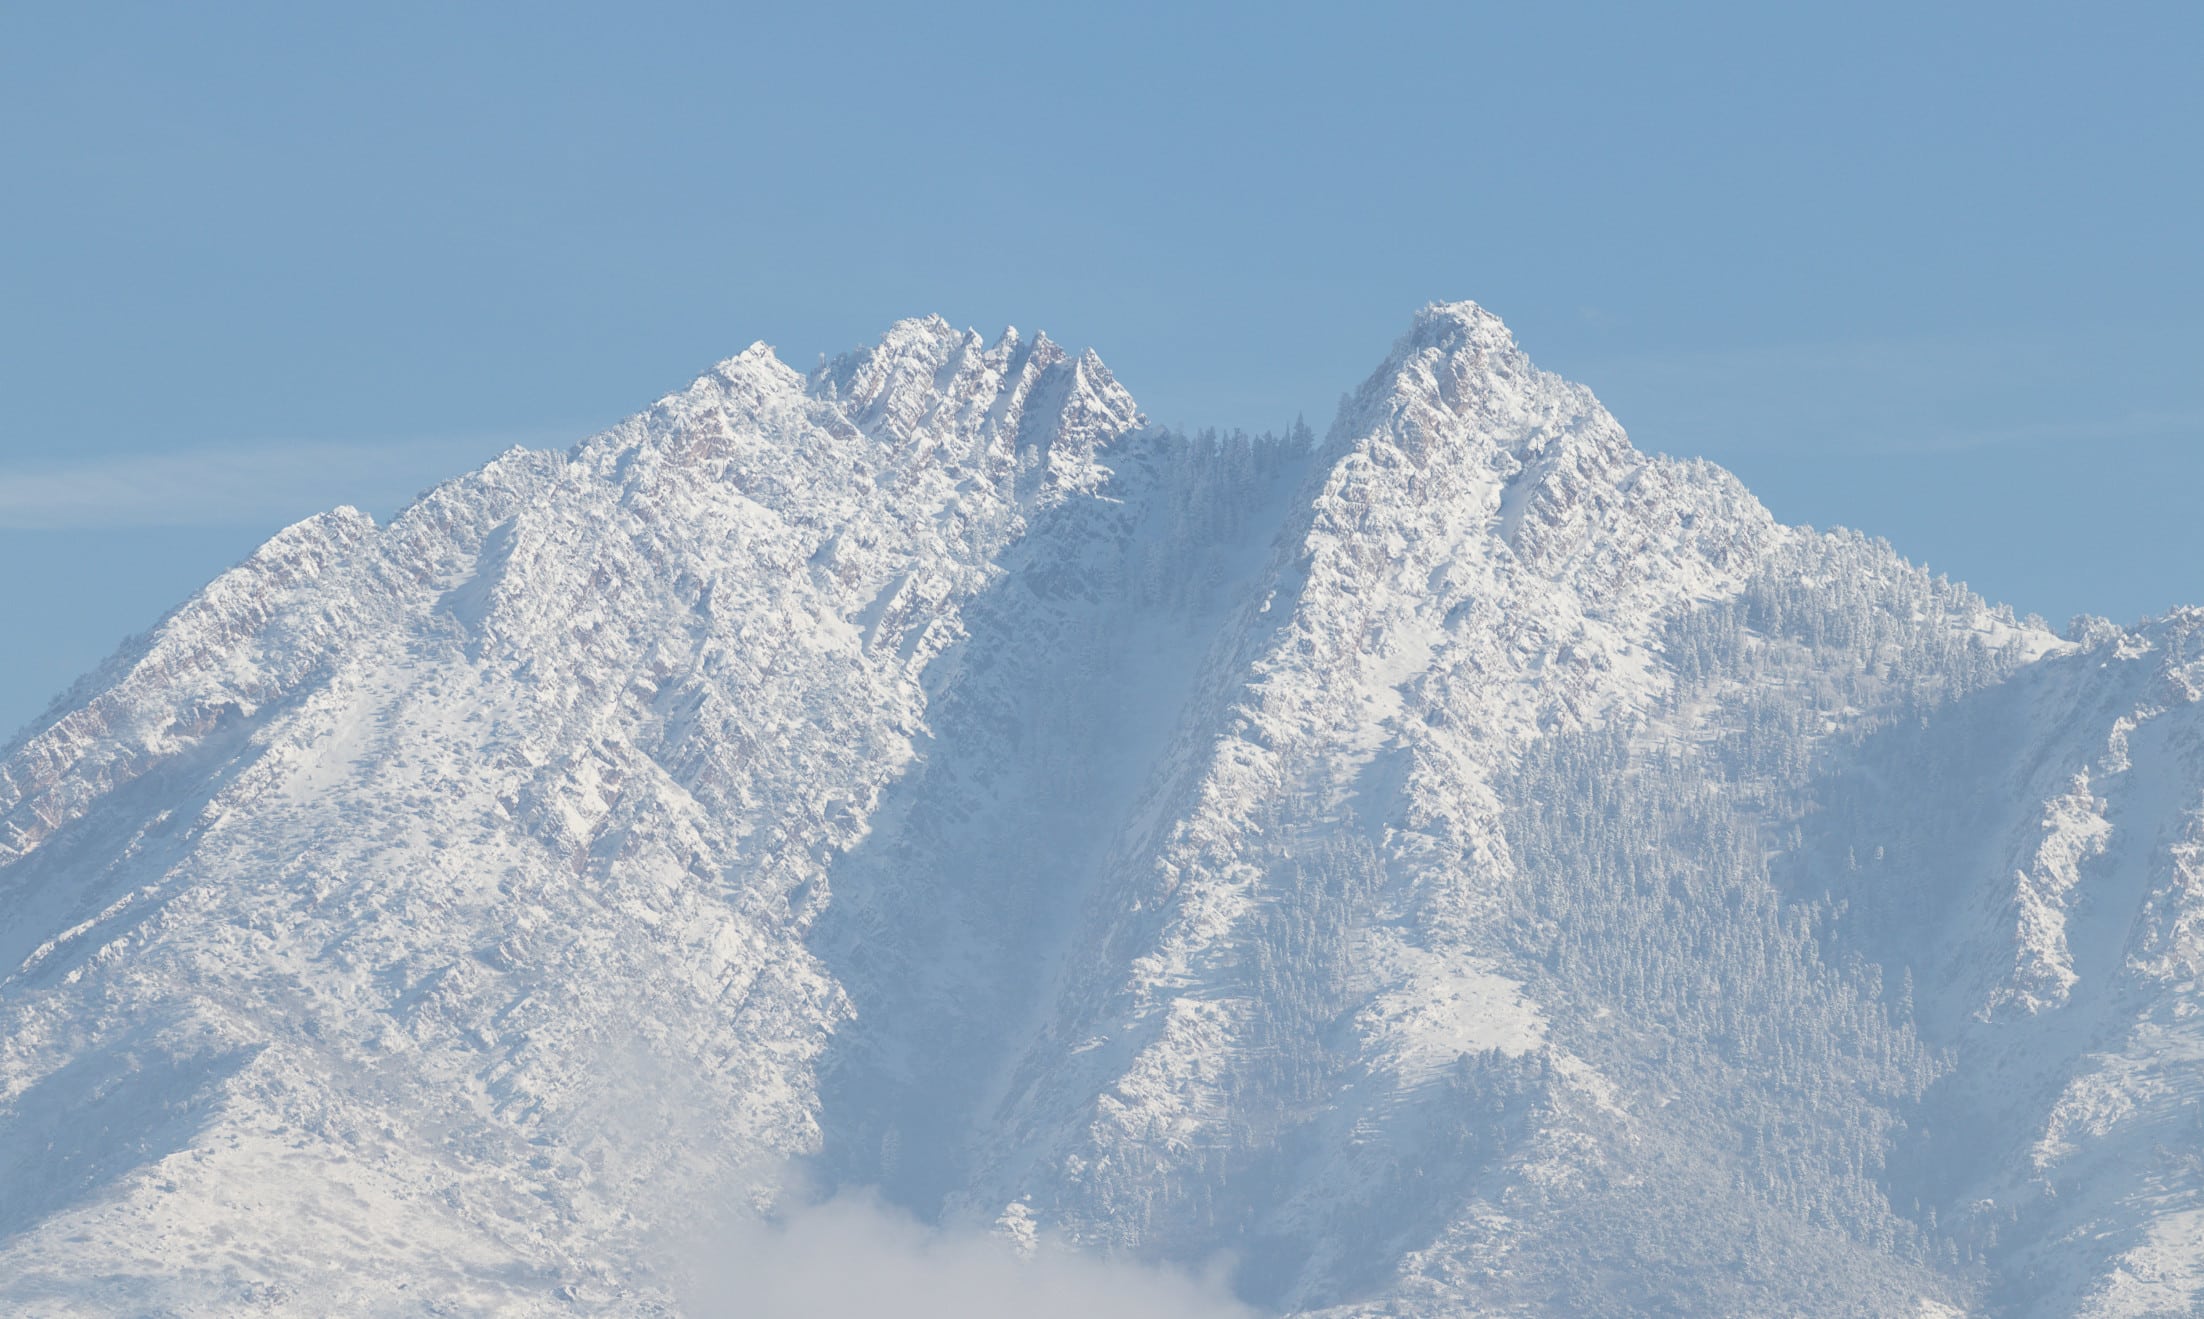 Mount Olympus, Utah, in the winter